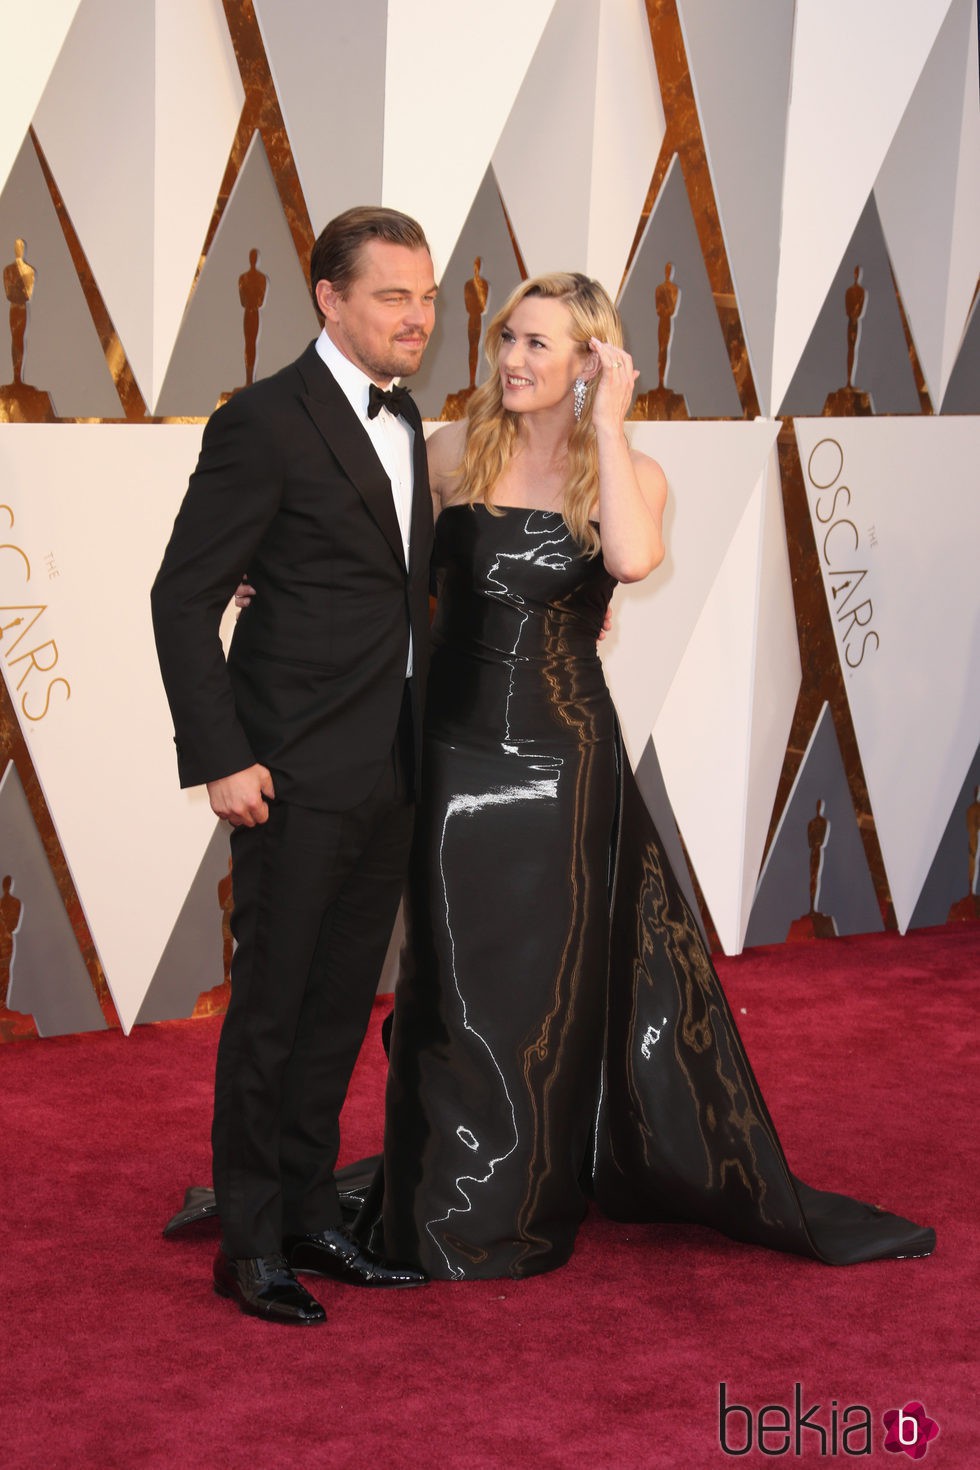 Kate Winslet observa de forma cariñosa a Leonardo DiCaprio en la alfombra roja de los Premios Oscar 2016